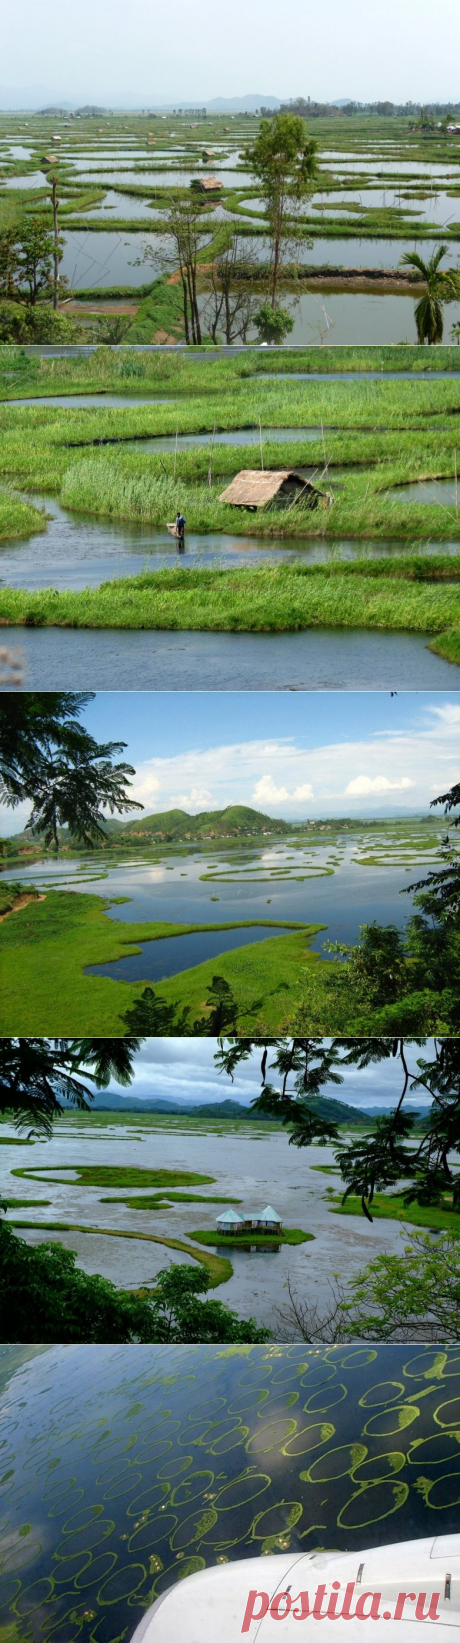 Жемчужина Индии — «плавающее озеро» Локтак / Туристический спутник